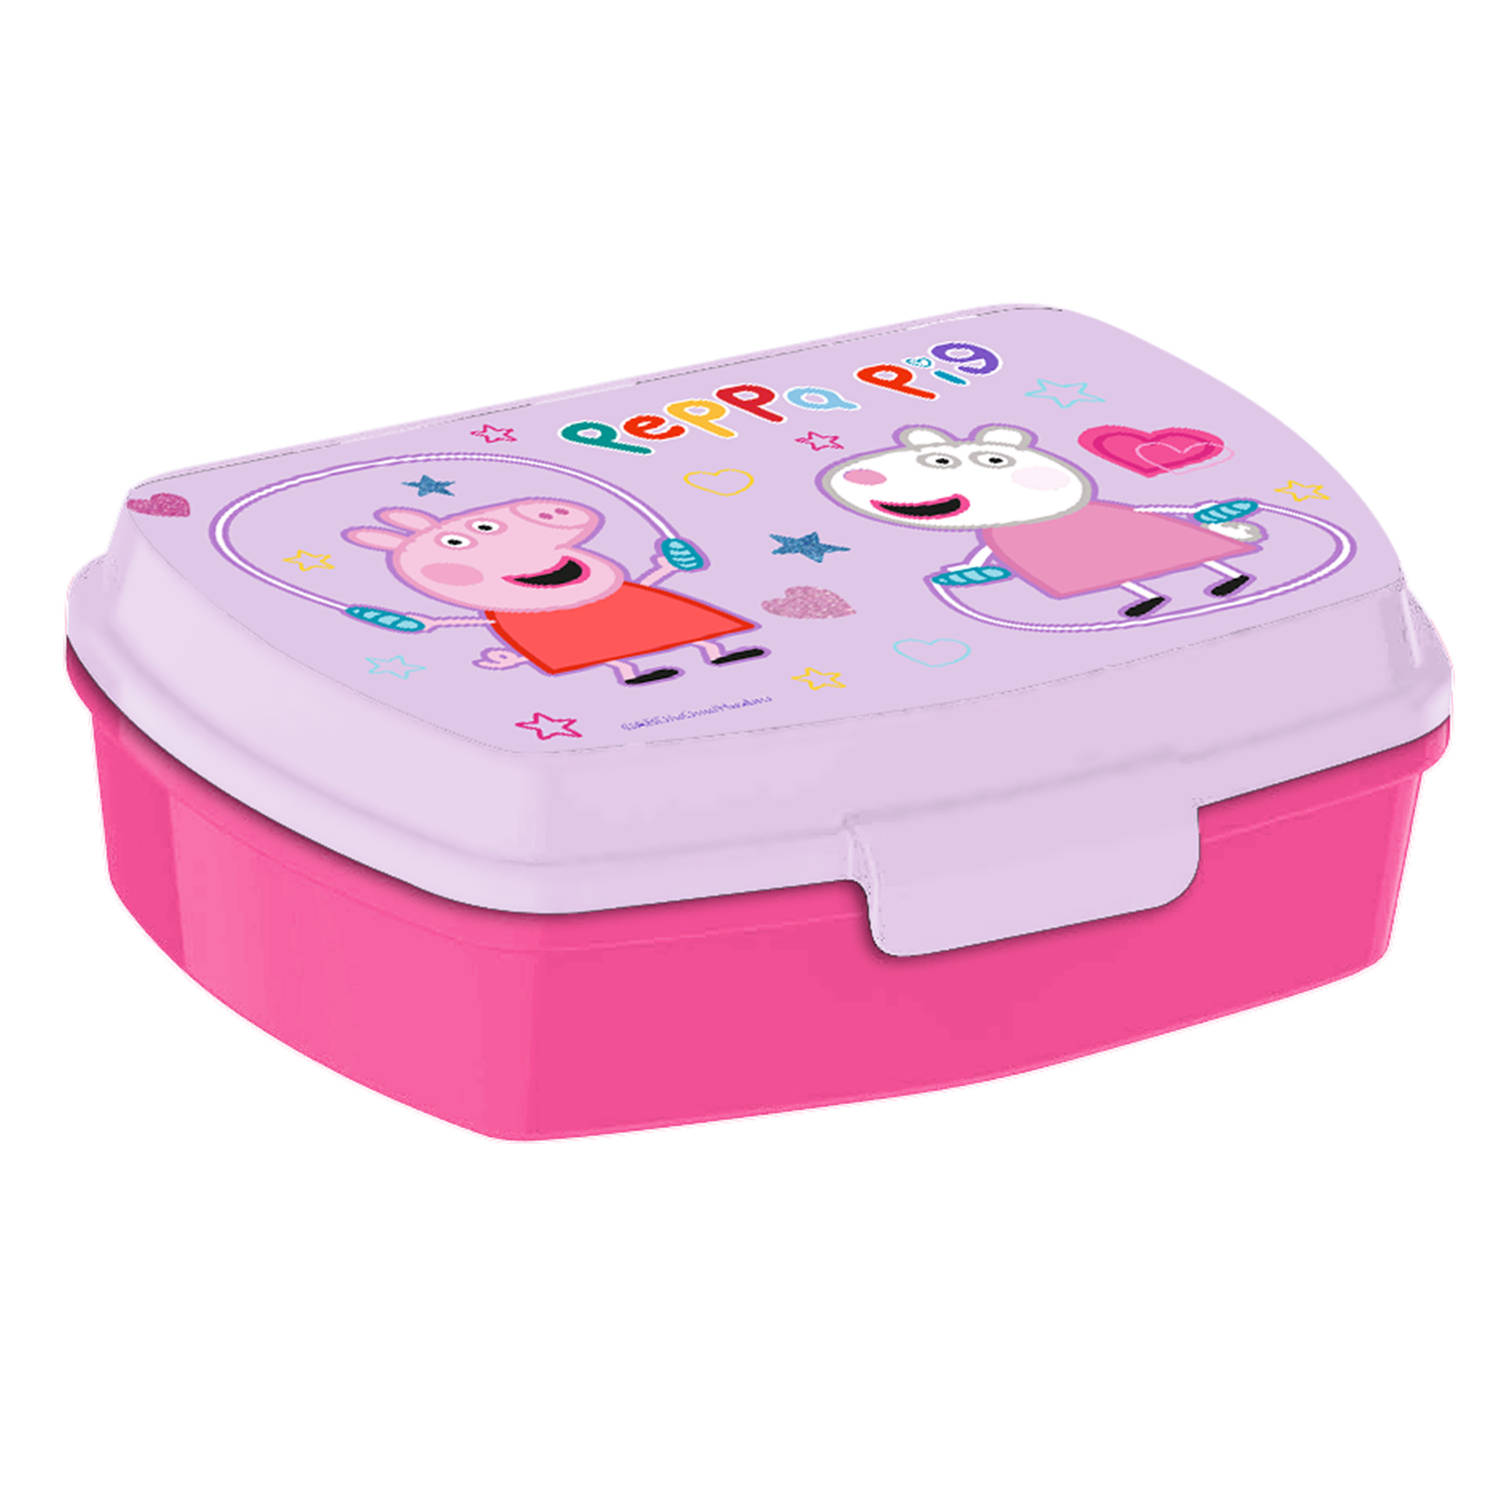 Peppa Pig broodtrommel/lunchbox voor kinderen - roze - kunststof - 20 x 10 cm